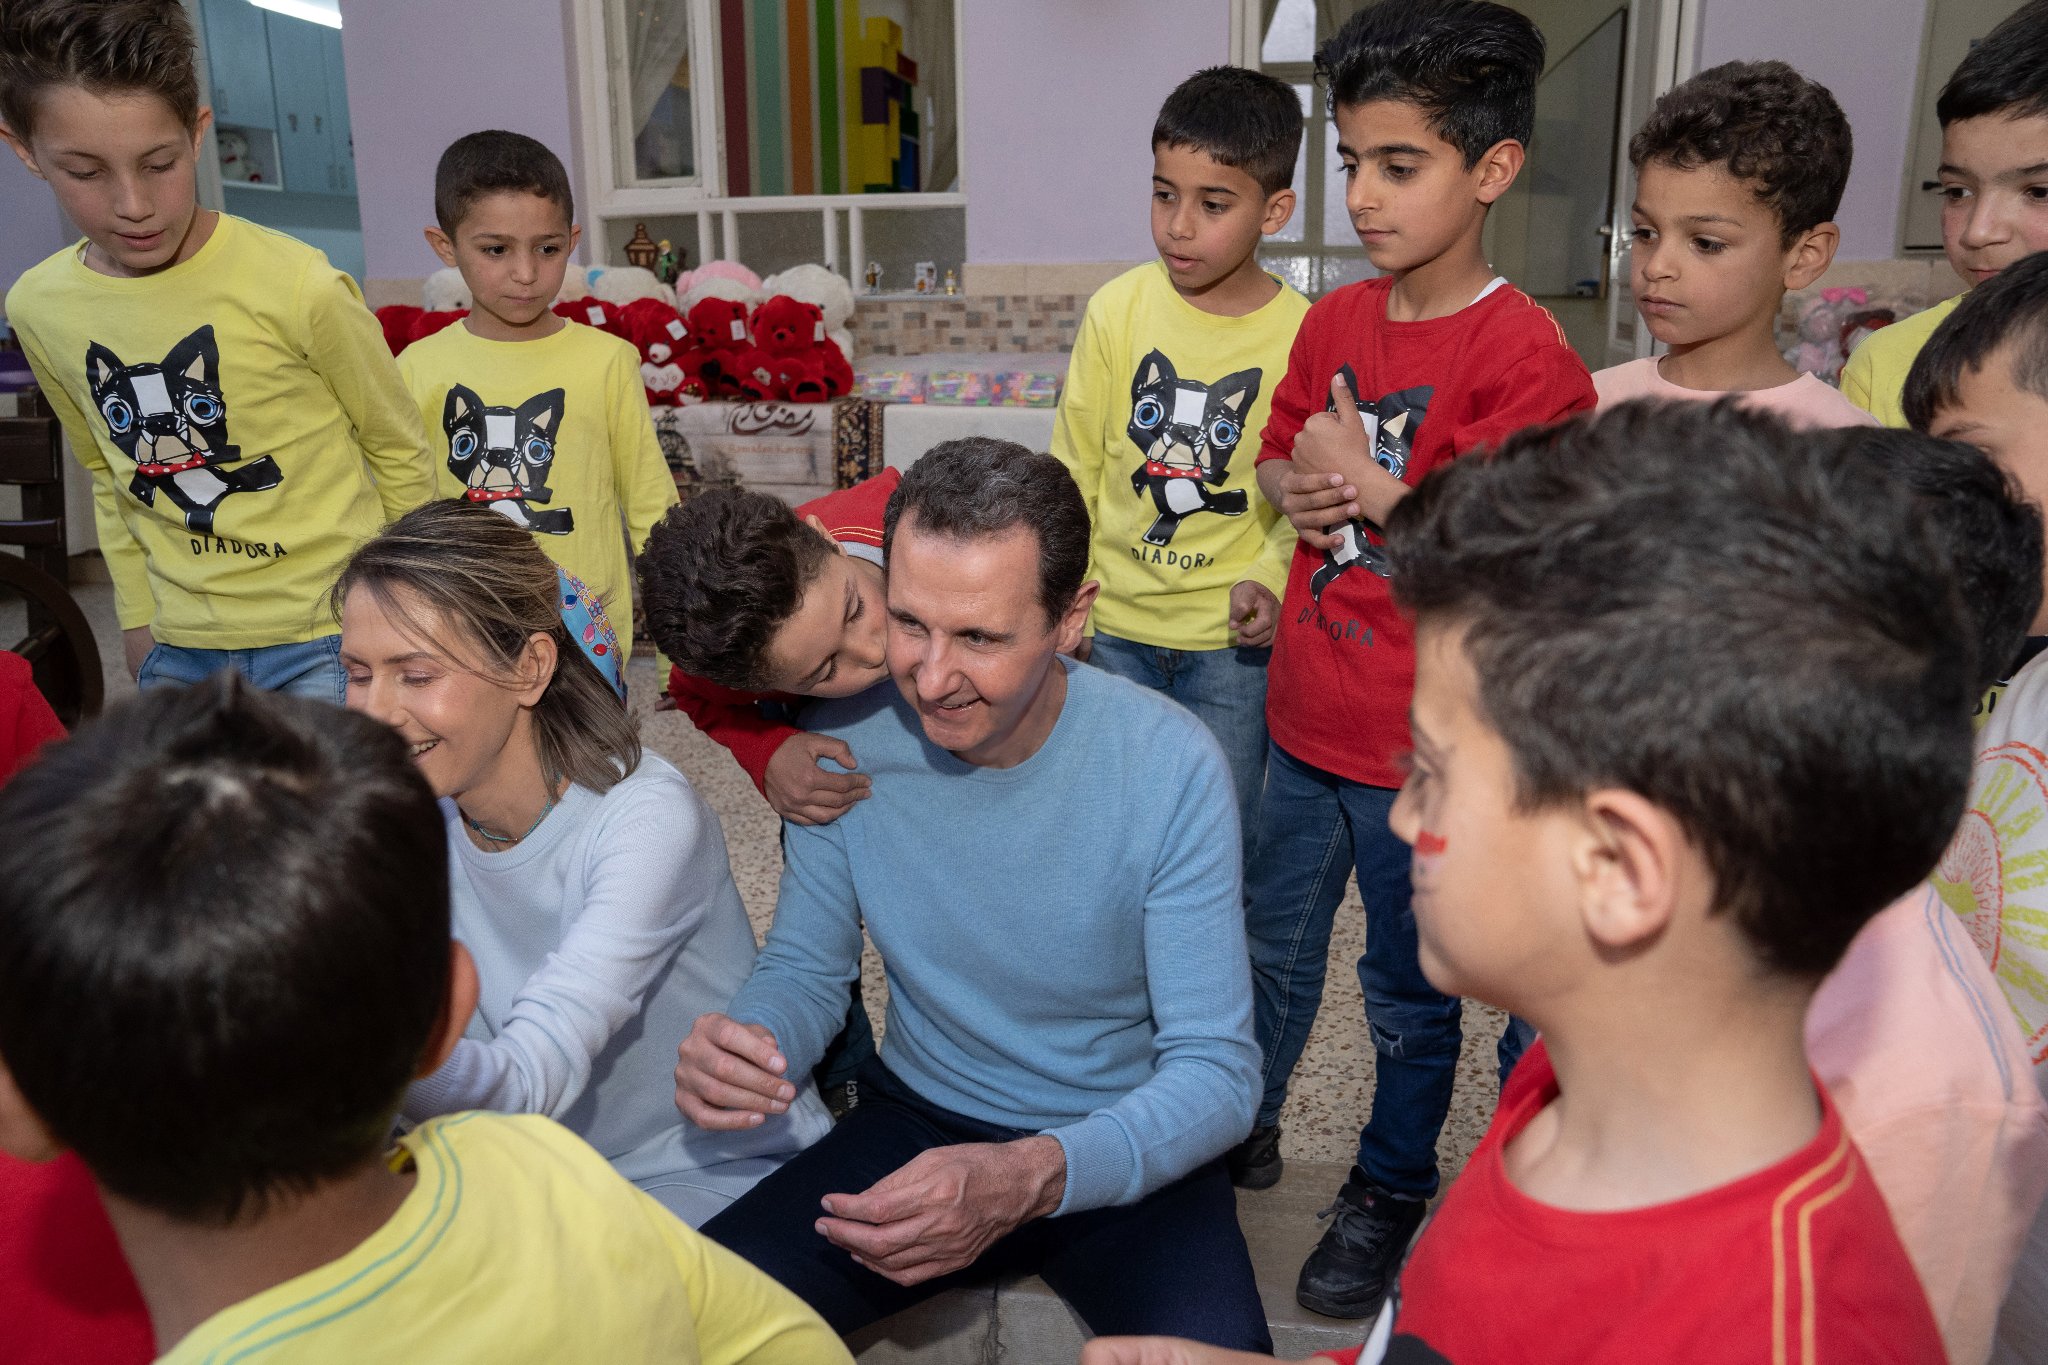 السيد الرئيس بشار الأسد والسيدة أسماء الأسد يزوران دار الأمان للأيتام بدمشق
